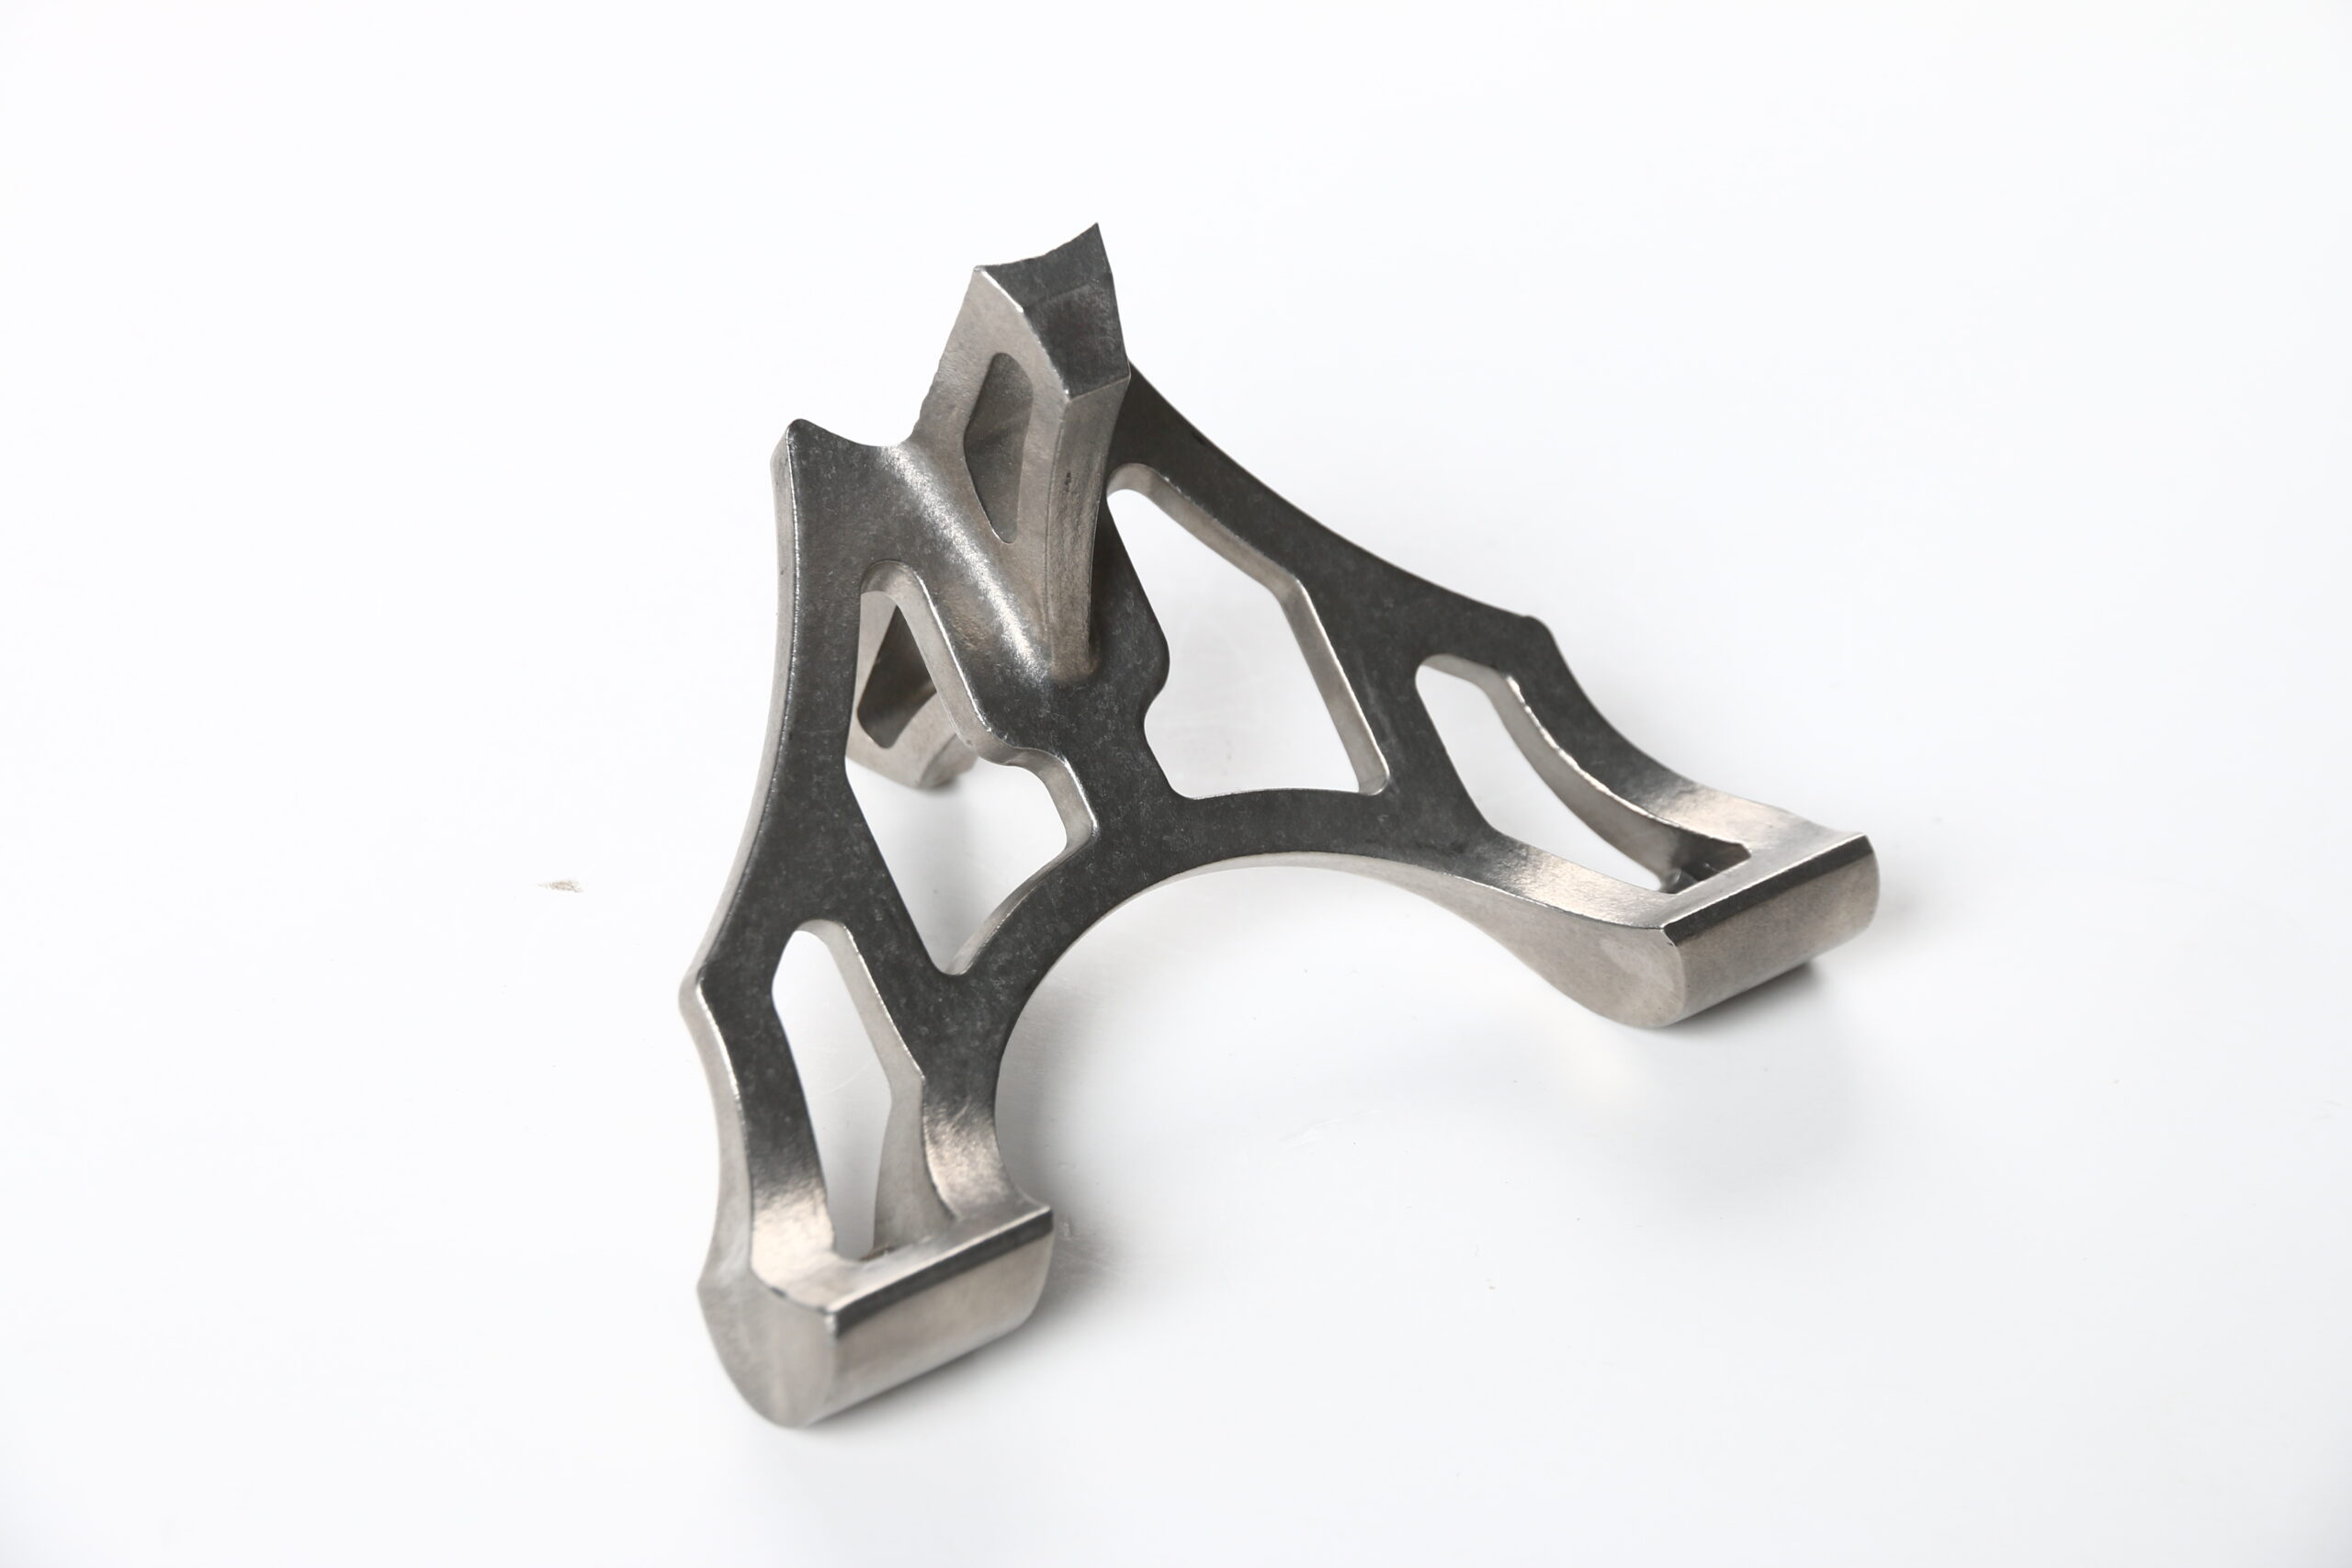 Titanium investment casting